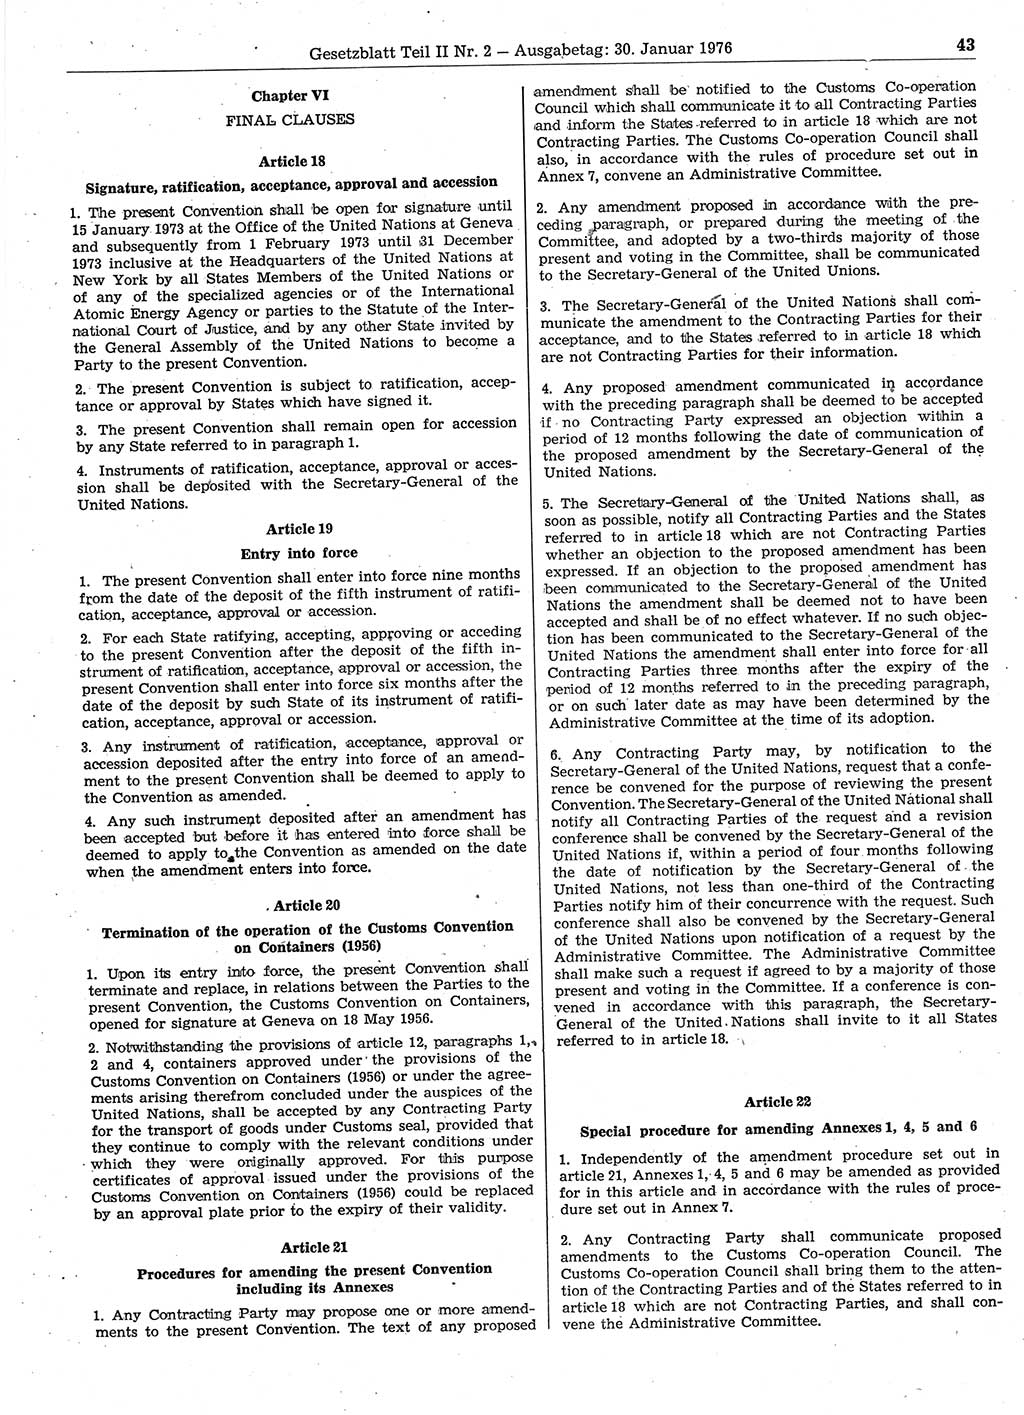 Gesetzblatt (GBl.) der Deutschen Demokratischen Republik (DDR) Teil ⅠⅠ 1976, Seite 43 (GBl. DDR ⅠⅠ 1976, S. 43)